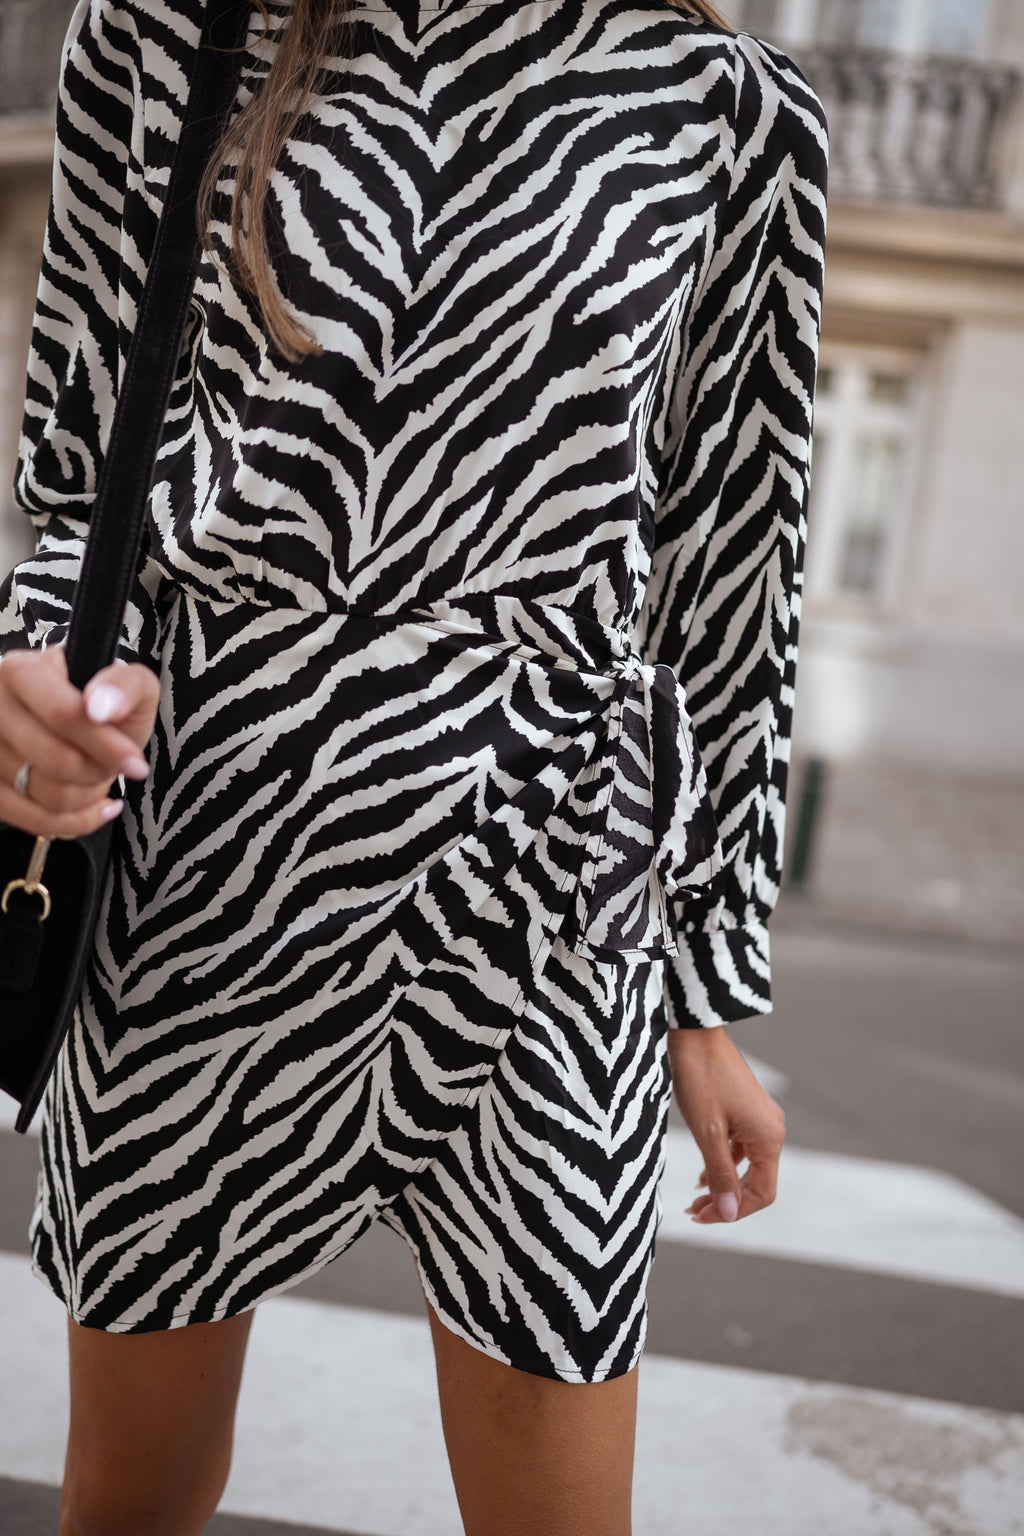 Maela Zebra dress - Black and white